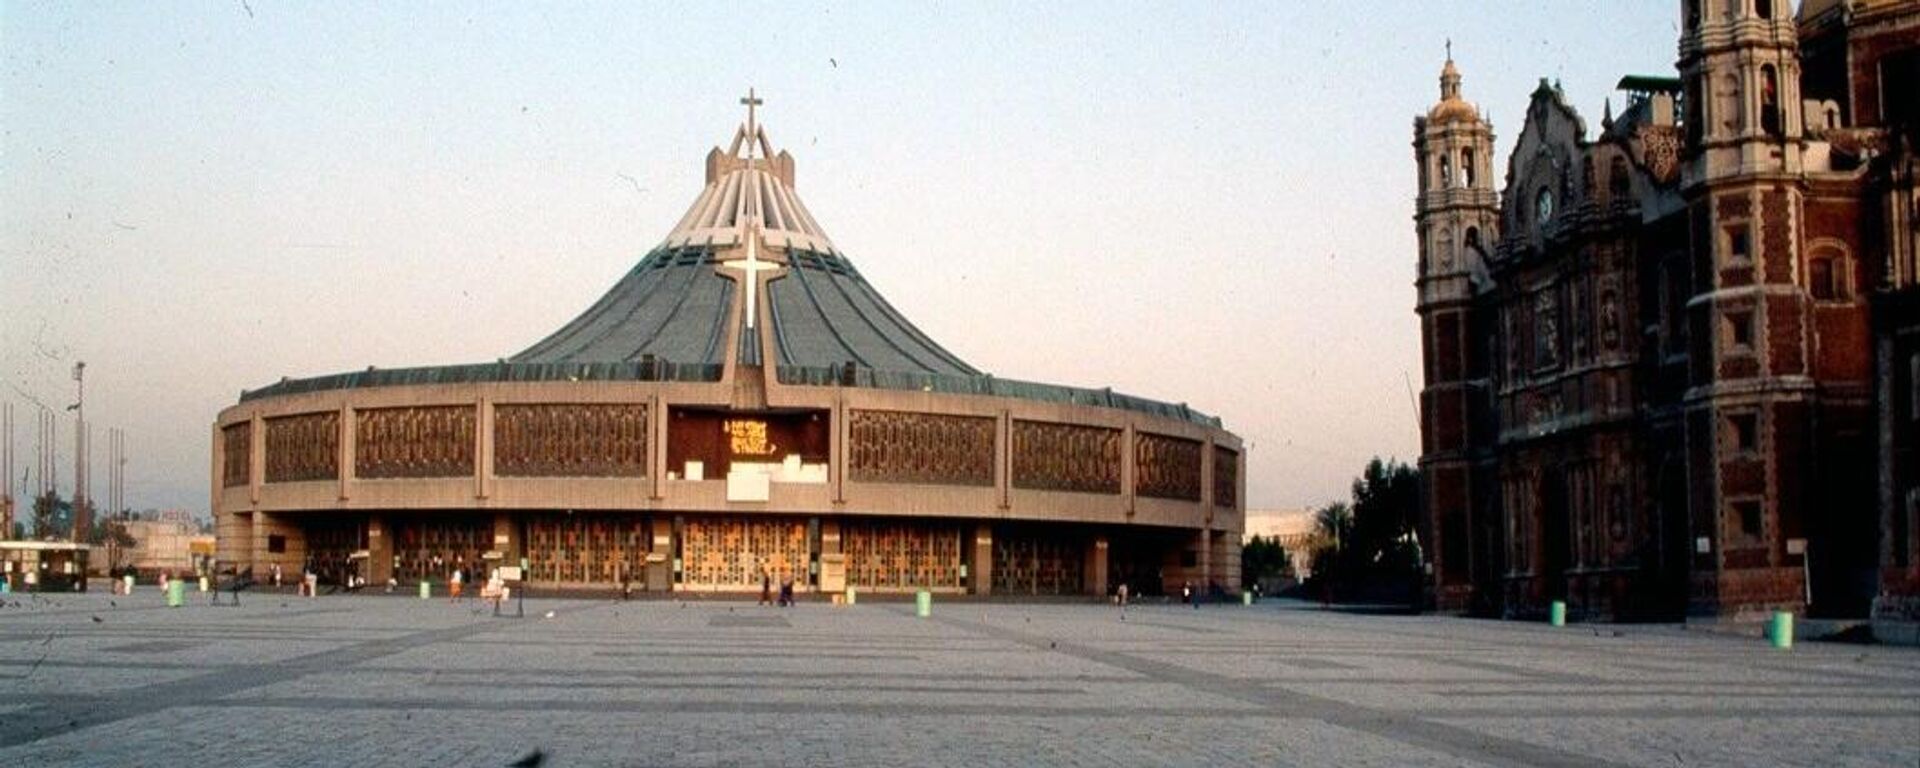 Imagen histórica de la Basílica de Guadalupe, en la Ciudad de México. - Sputnik Mundo, 1920, 11.12.2021